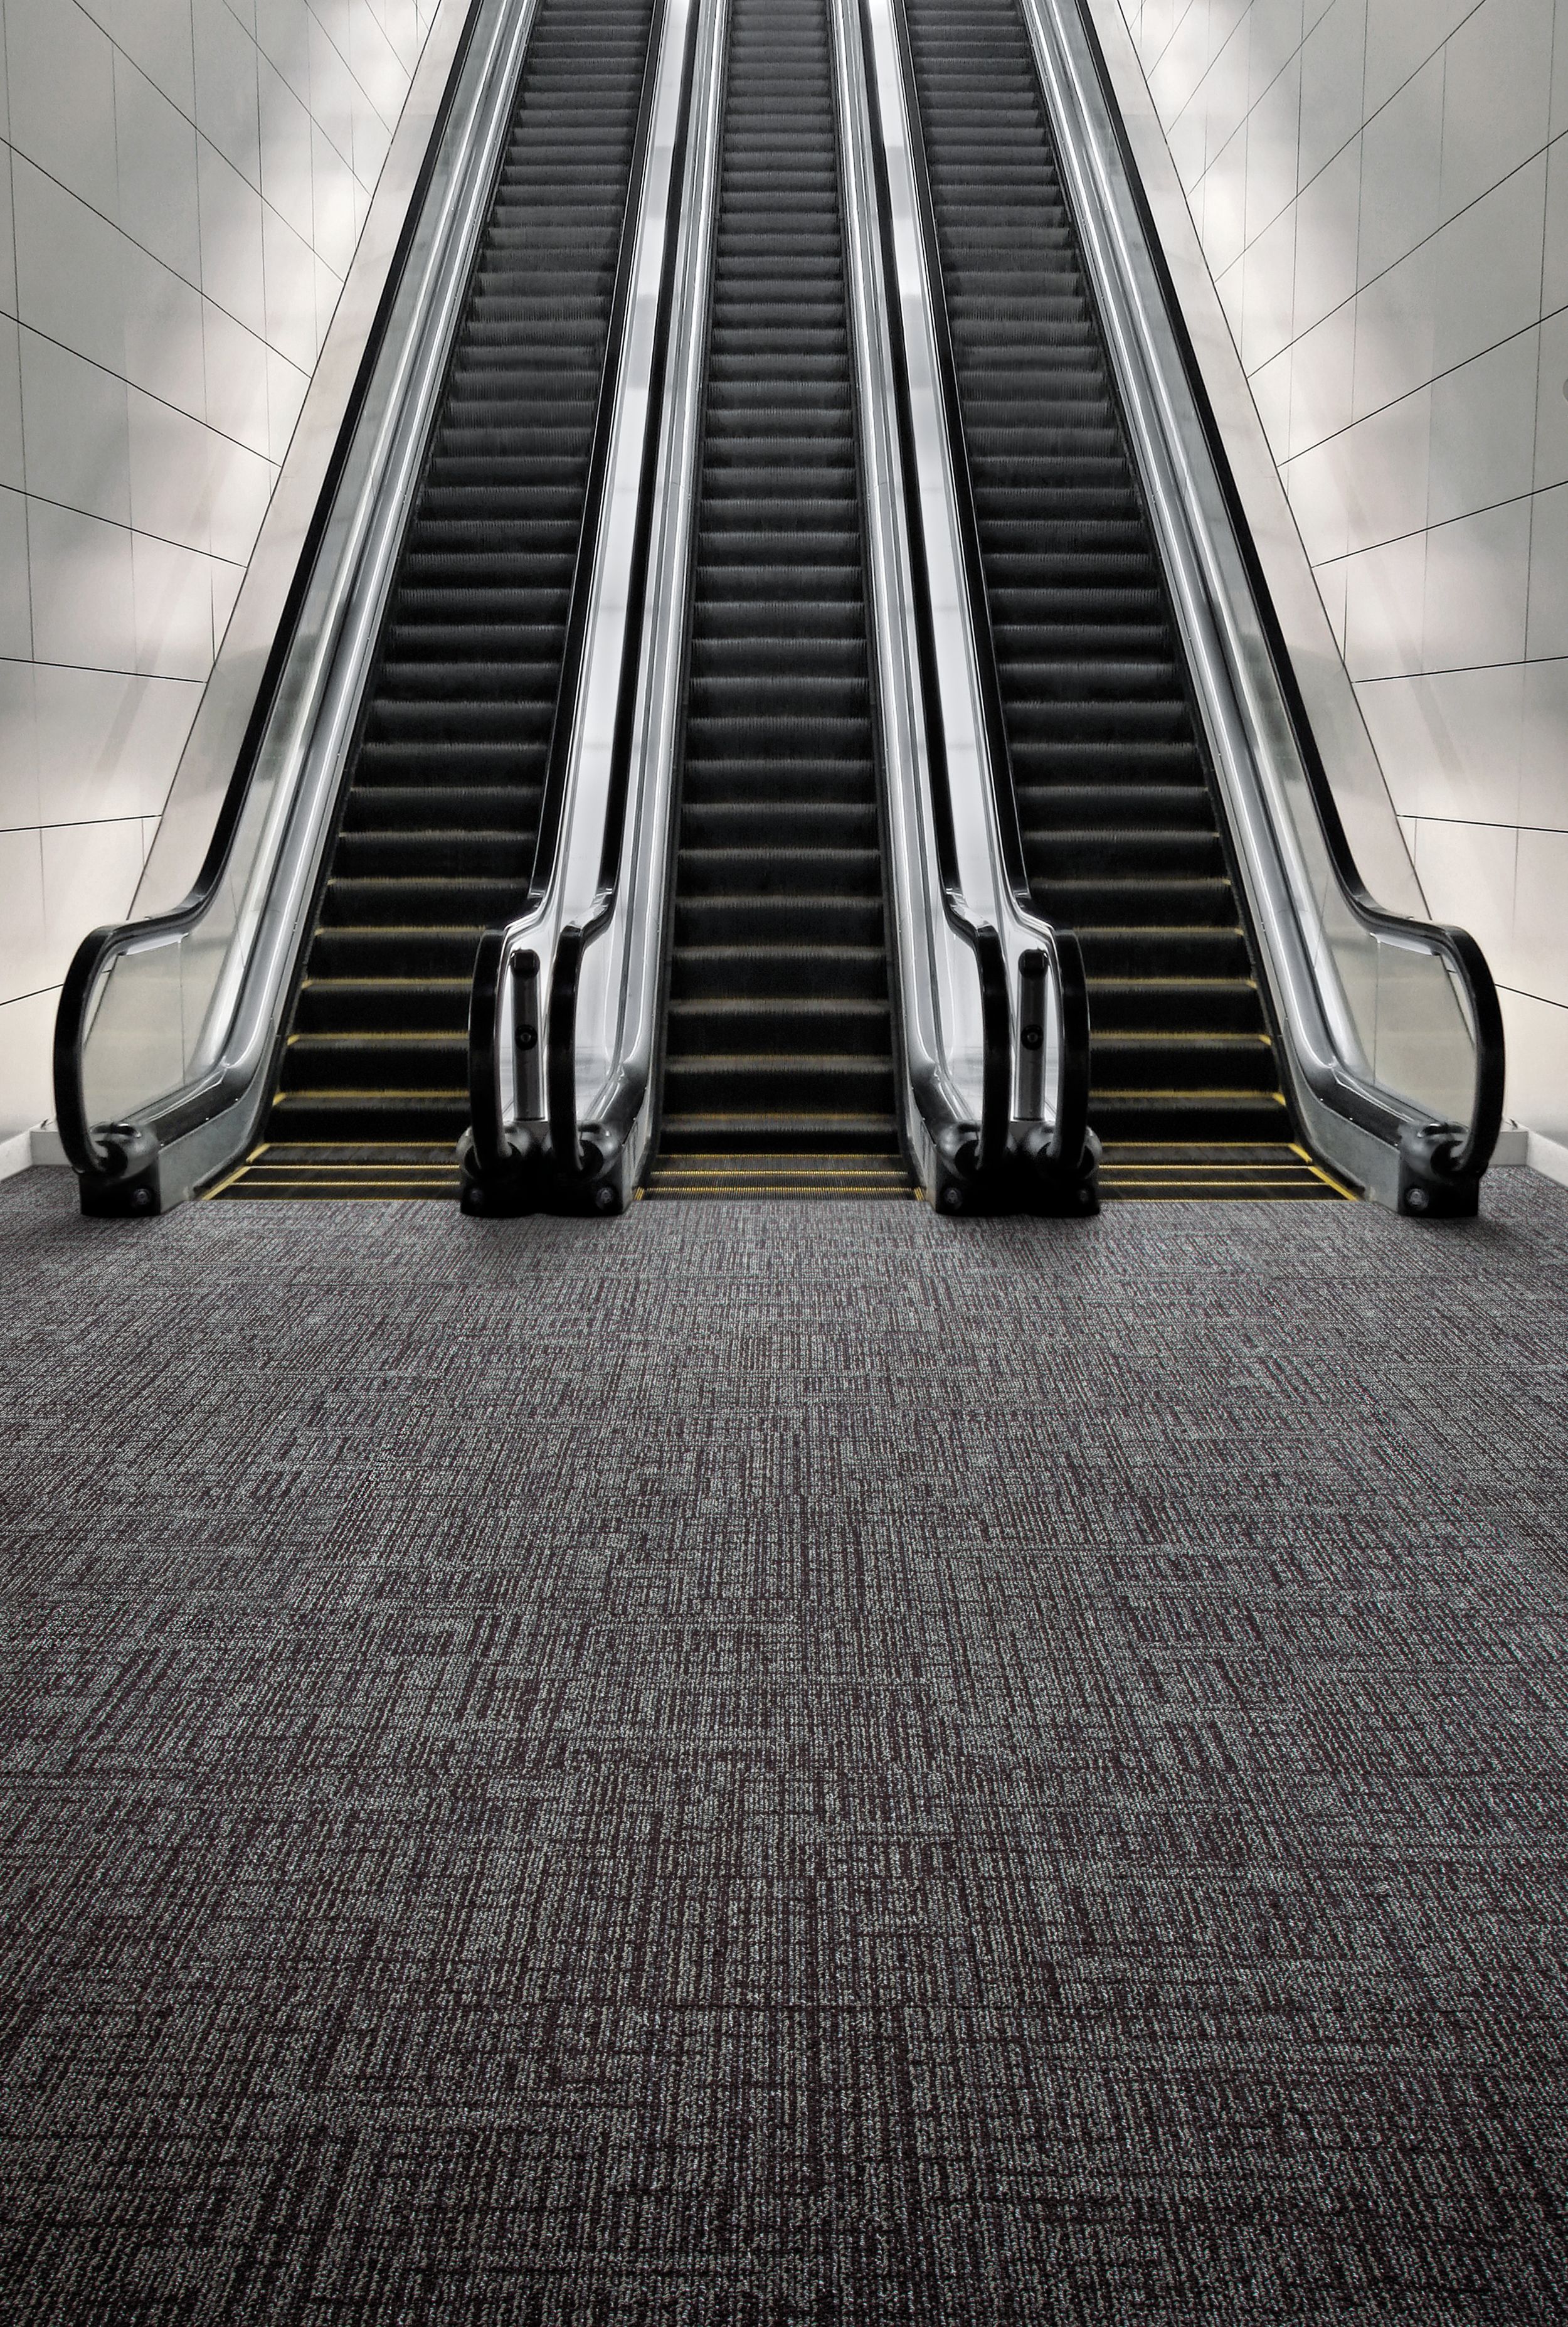 Interface SR899 carpet tile with escalator imagen número 1